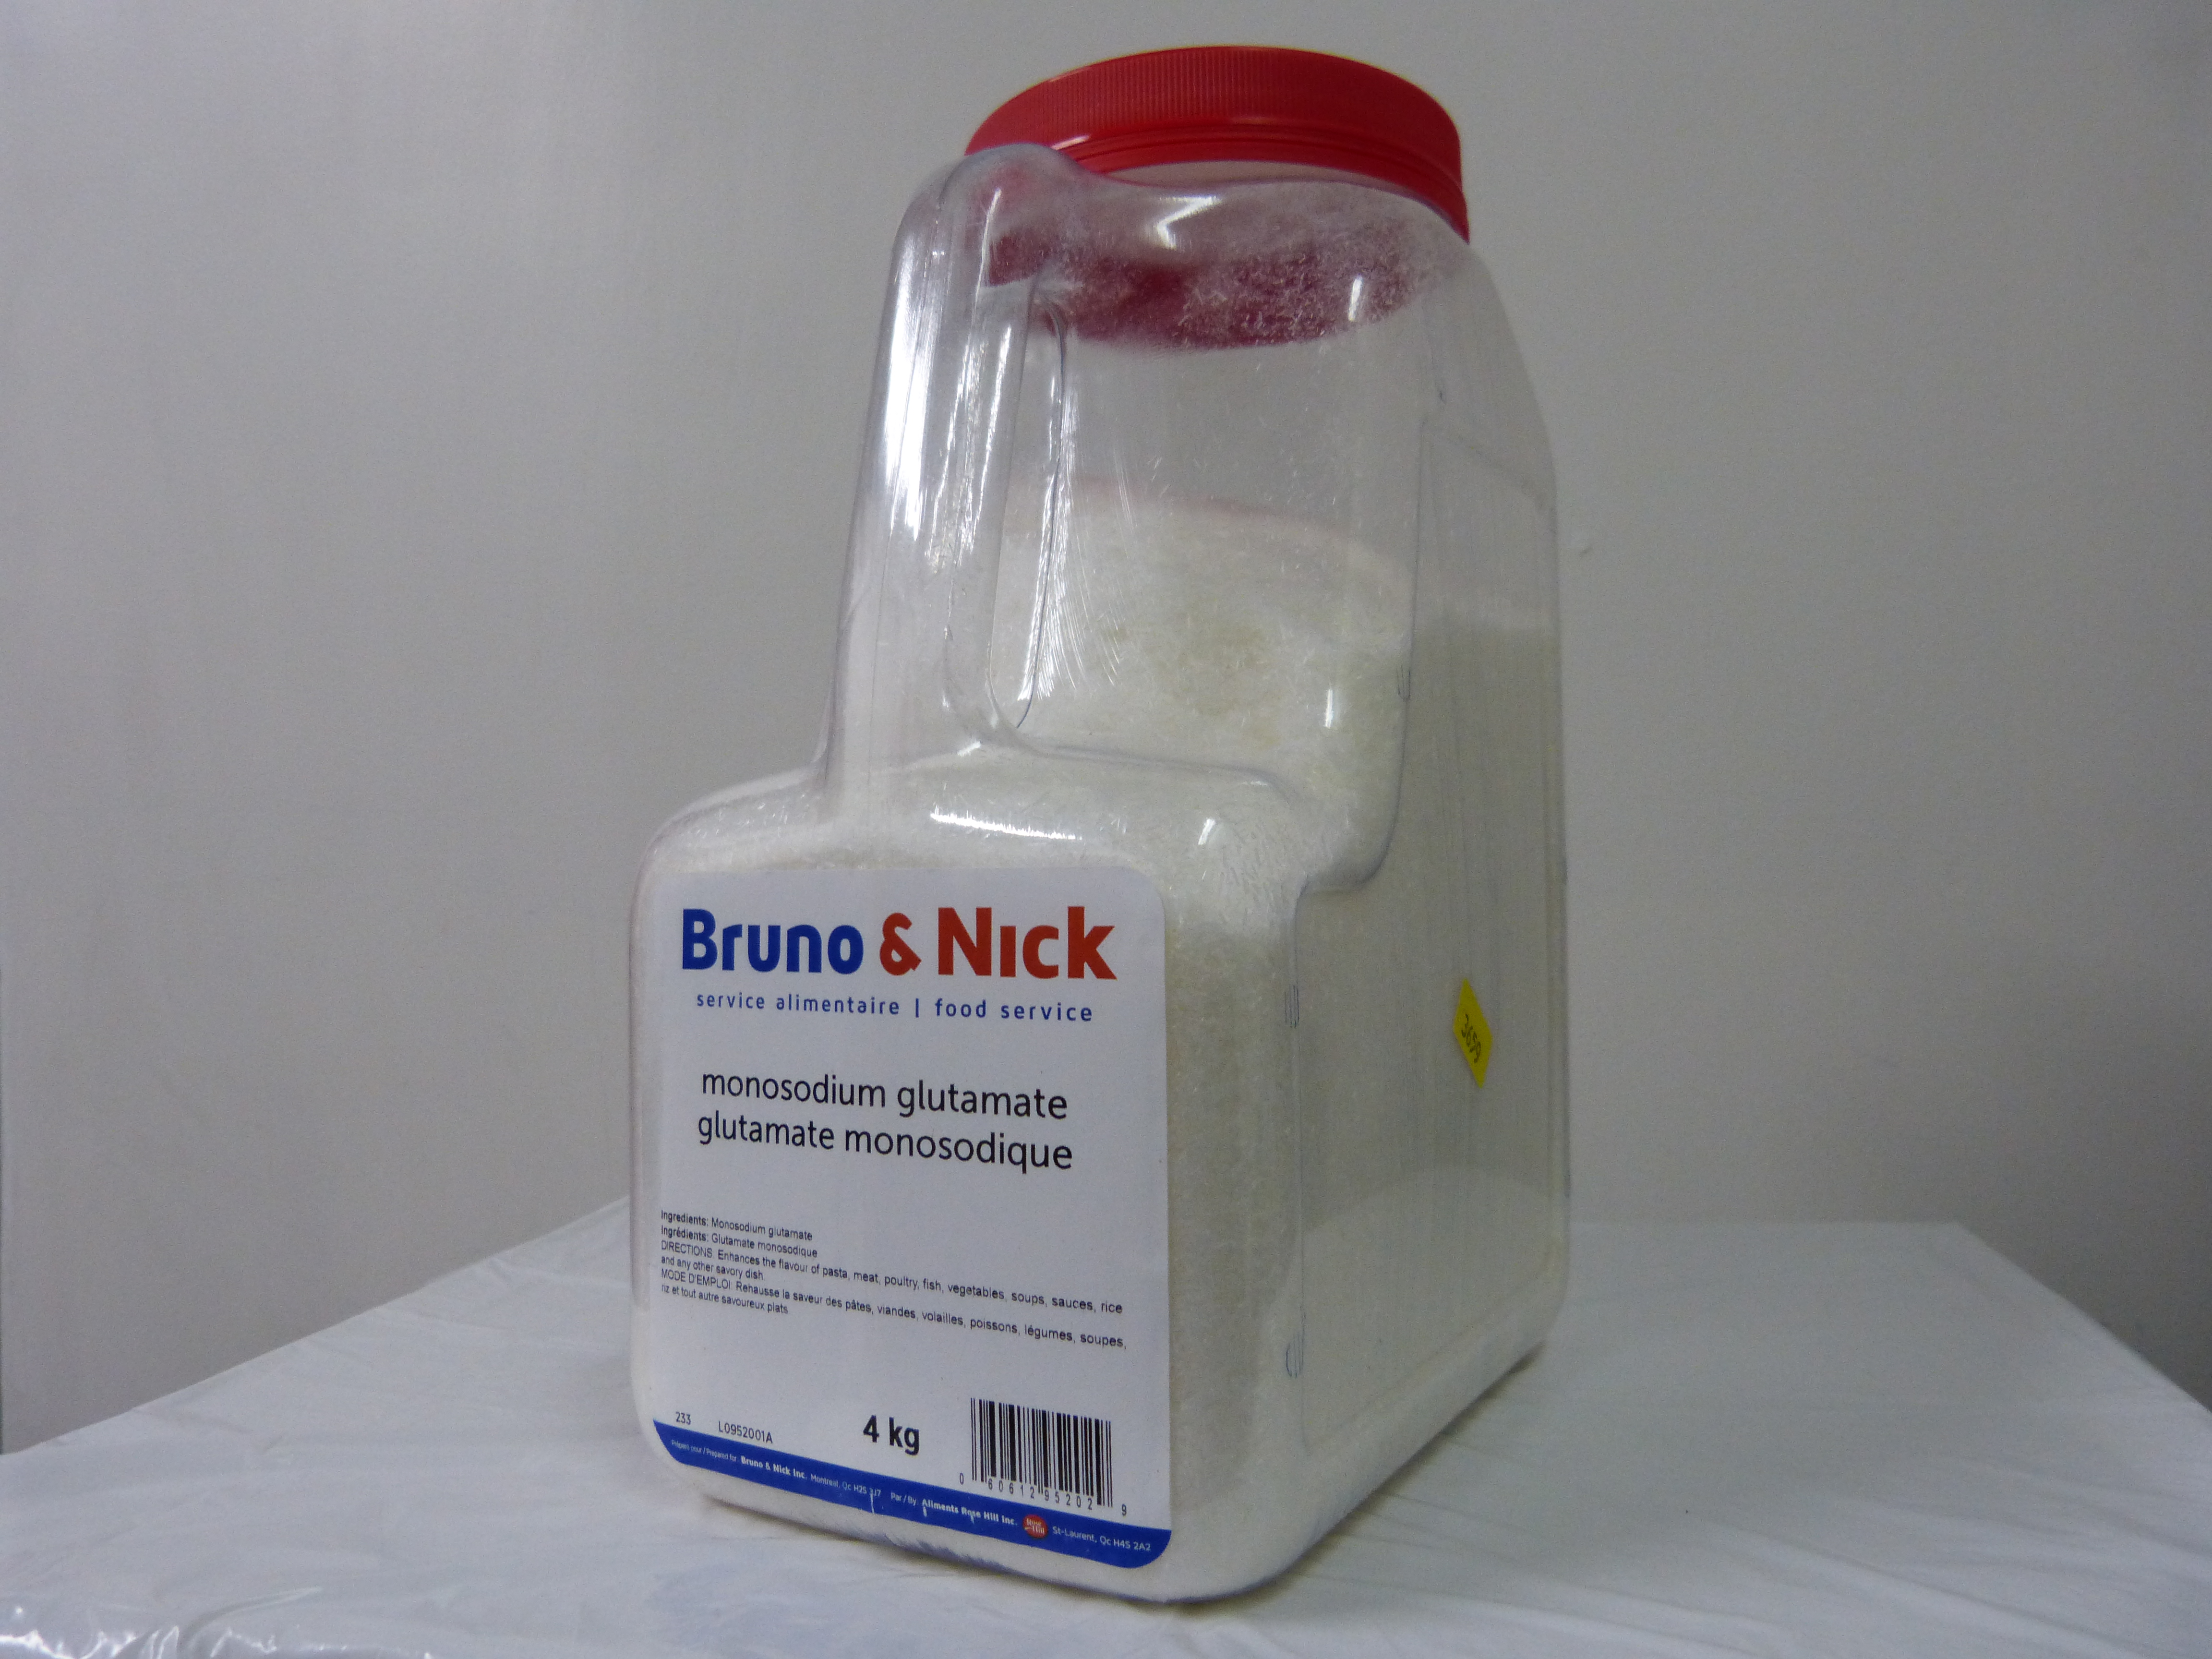 msg (mono sodium glud) 4kg